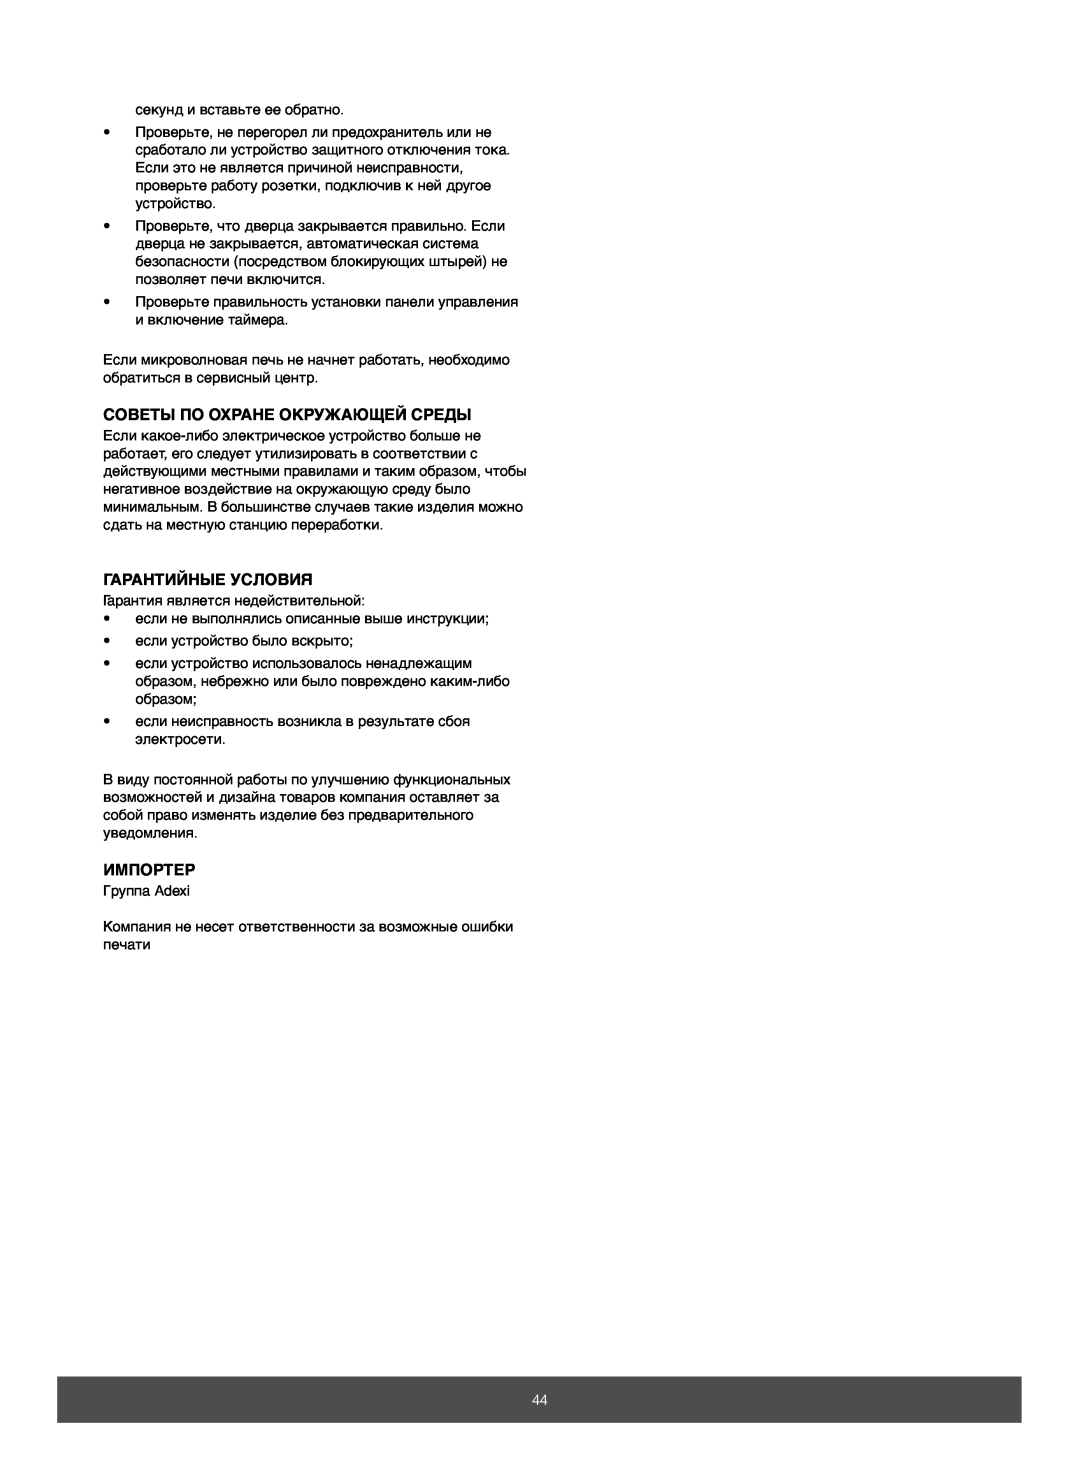 Melissa 653-082 manual Советы По Охране Окружающей Среды, Гарантийные Условия, Импортер 